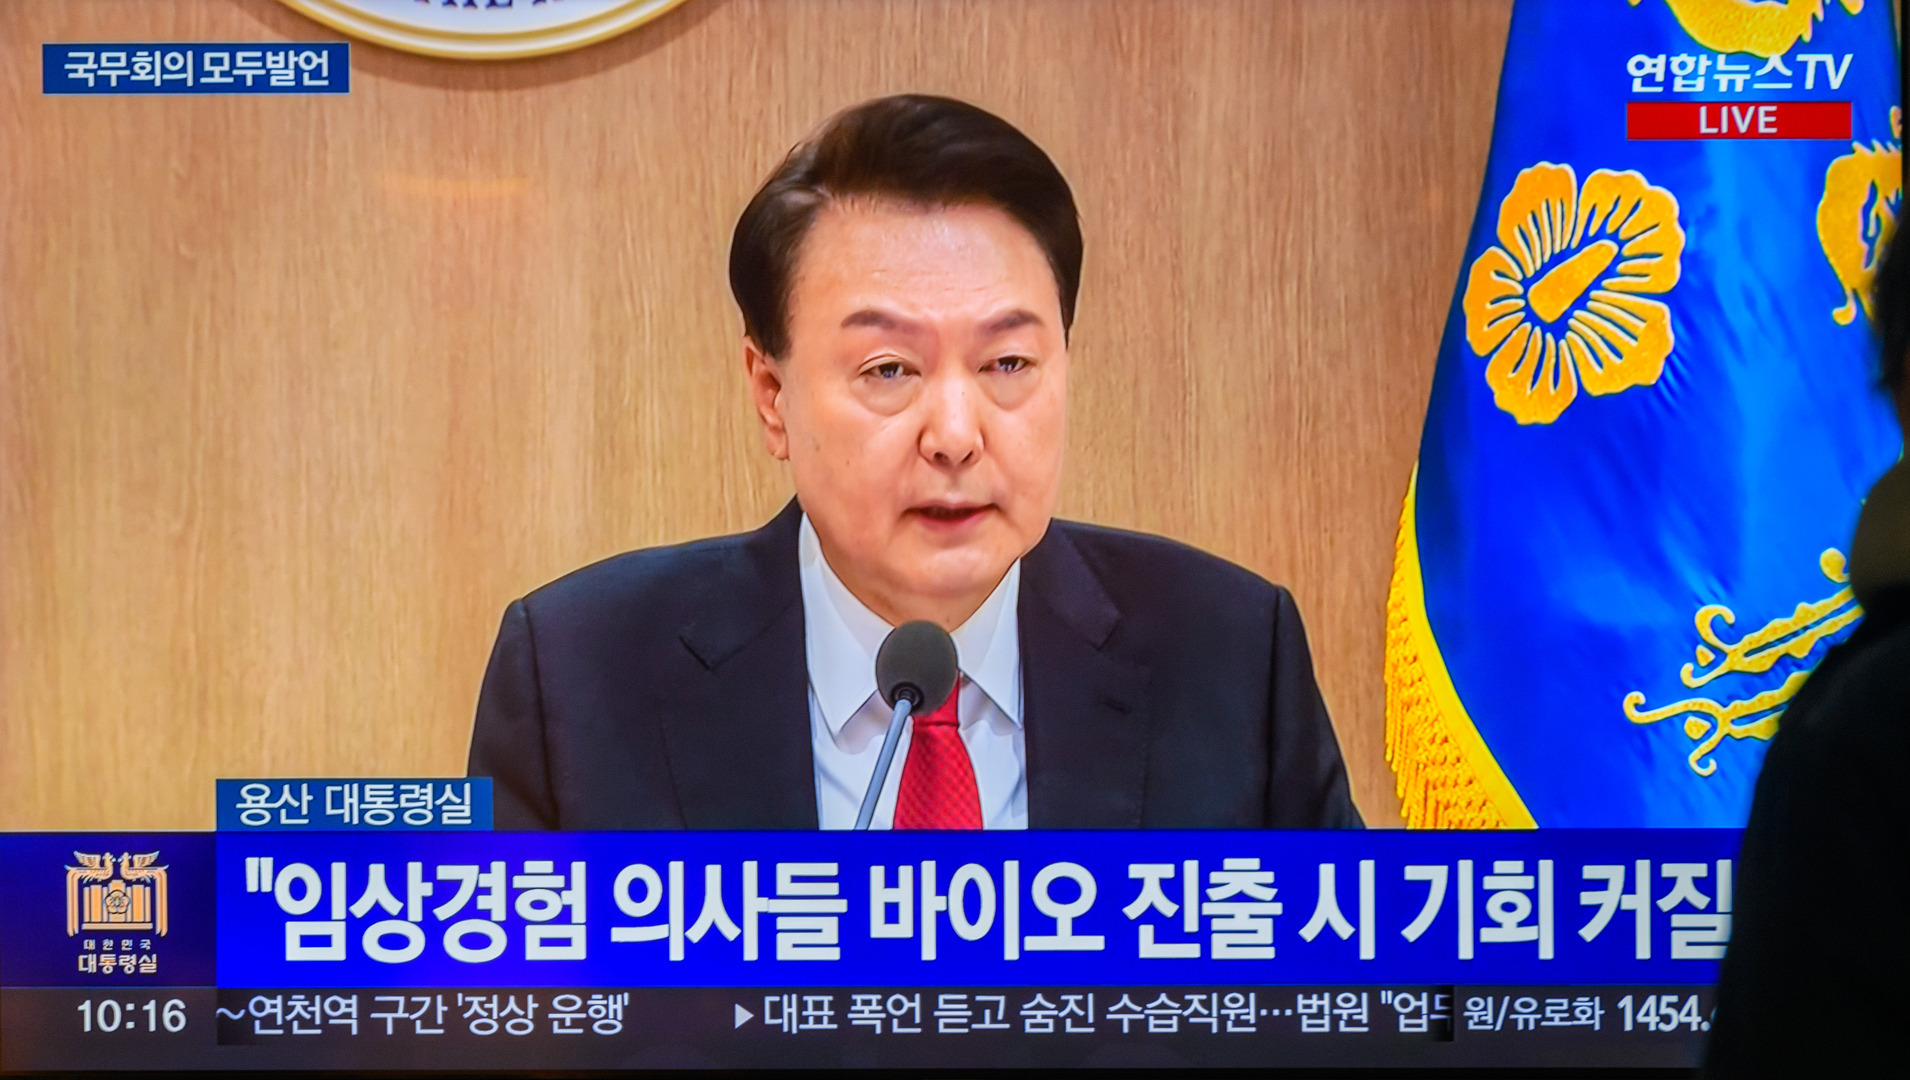 الرئيس الكوري الجنوبي يون سيوك يول